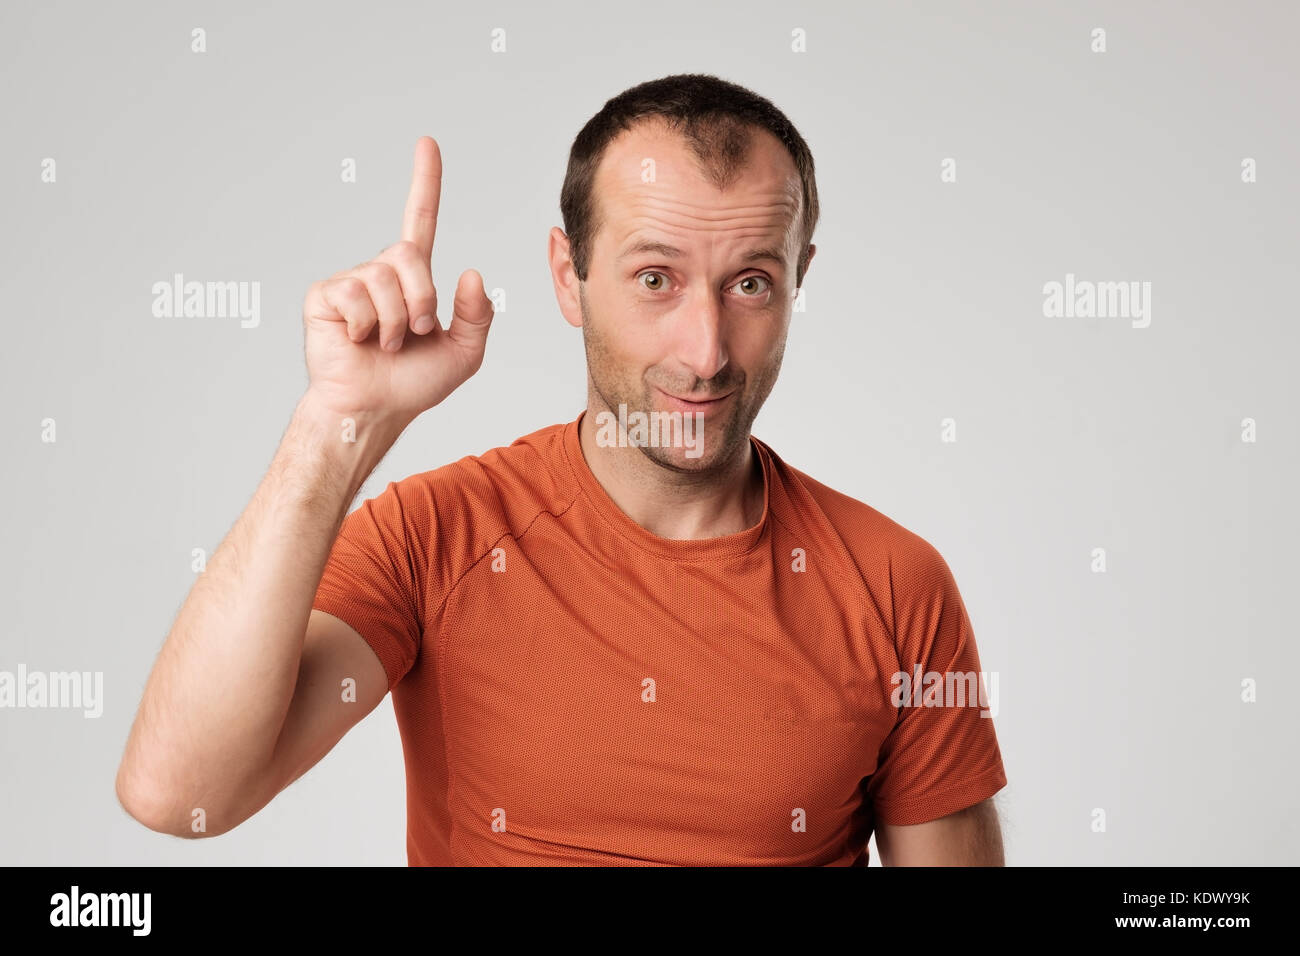 Mature hispanic man showing upwards index finger. Stock Photo